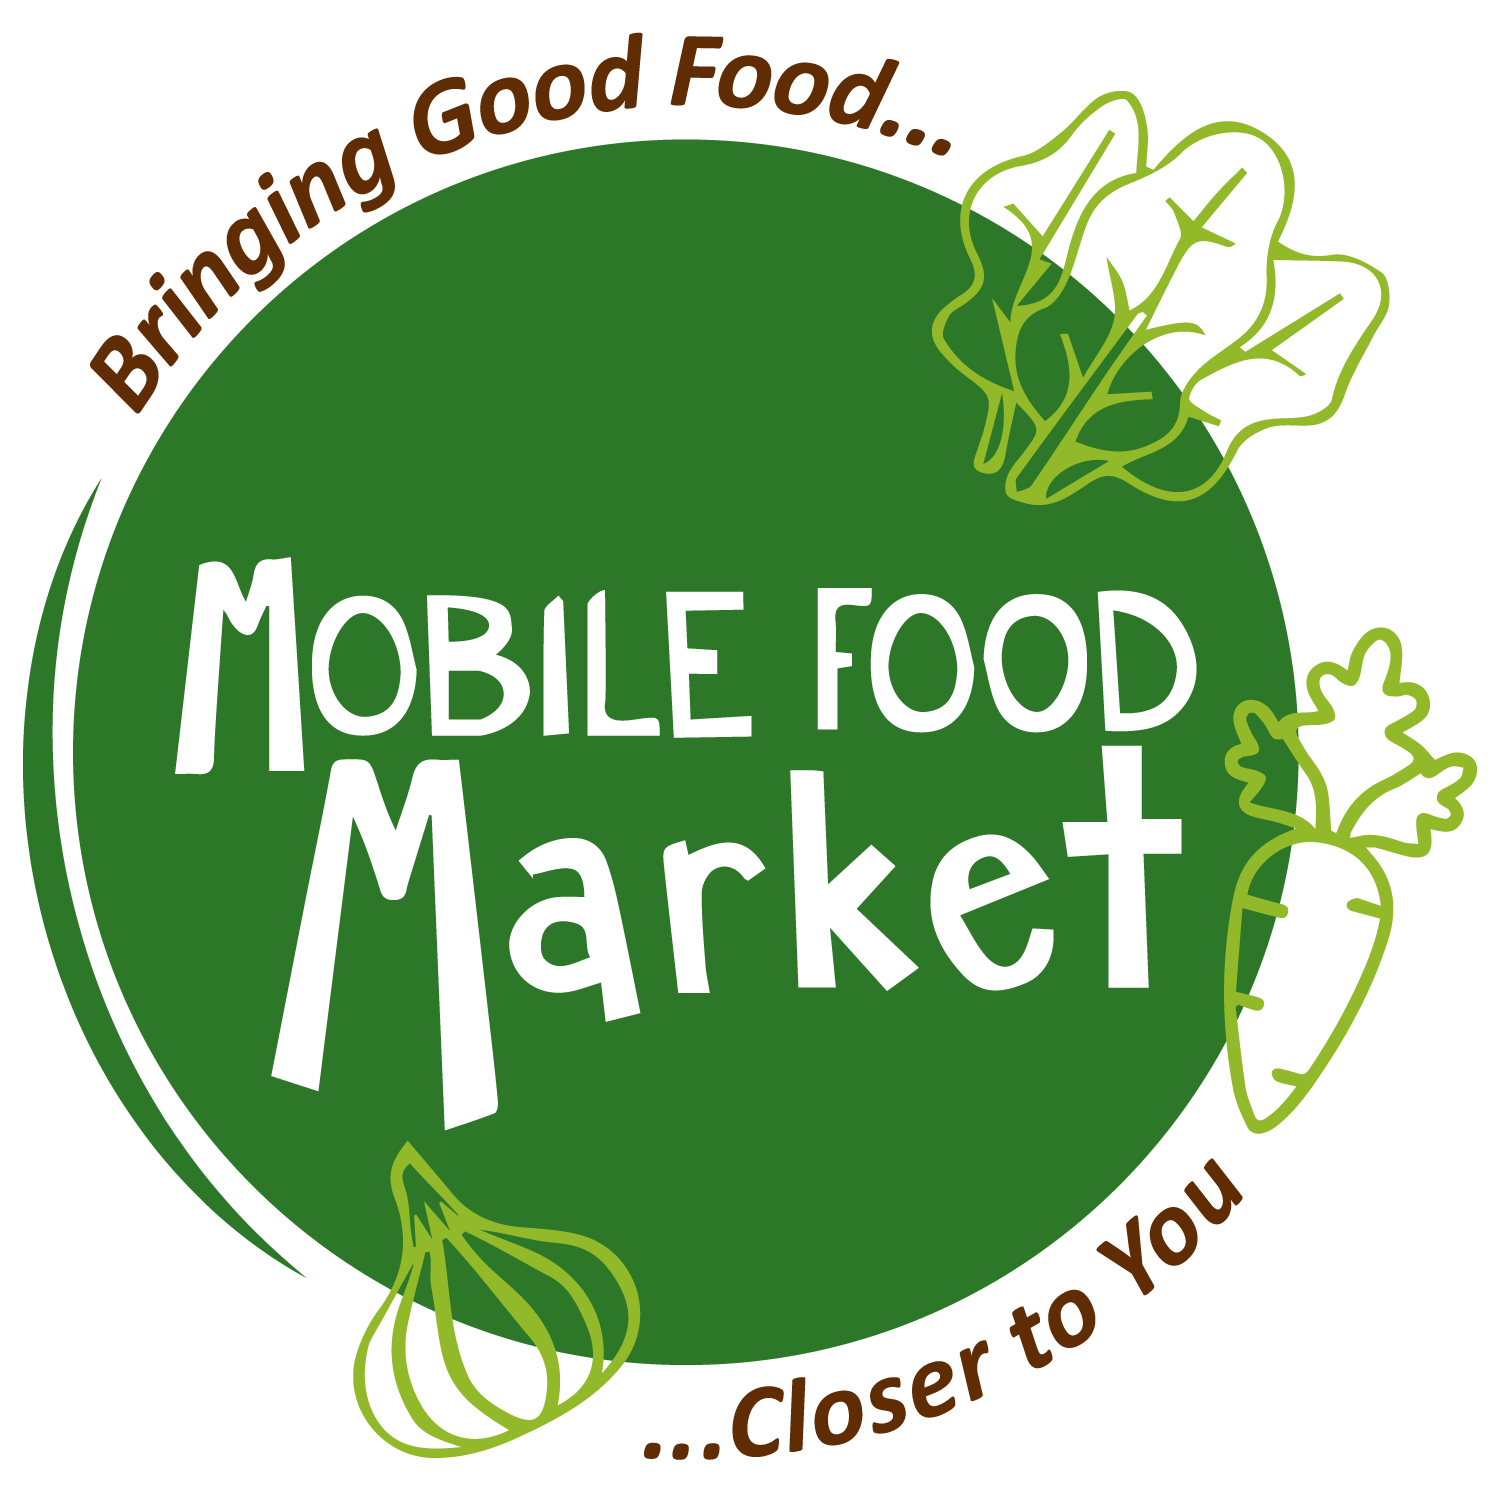 Mobile Food Market logo